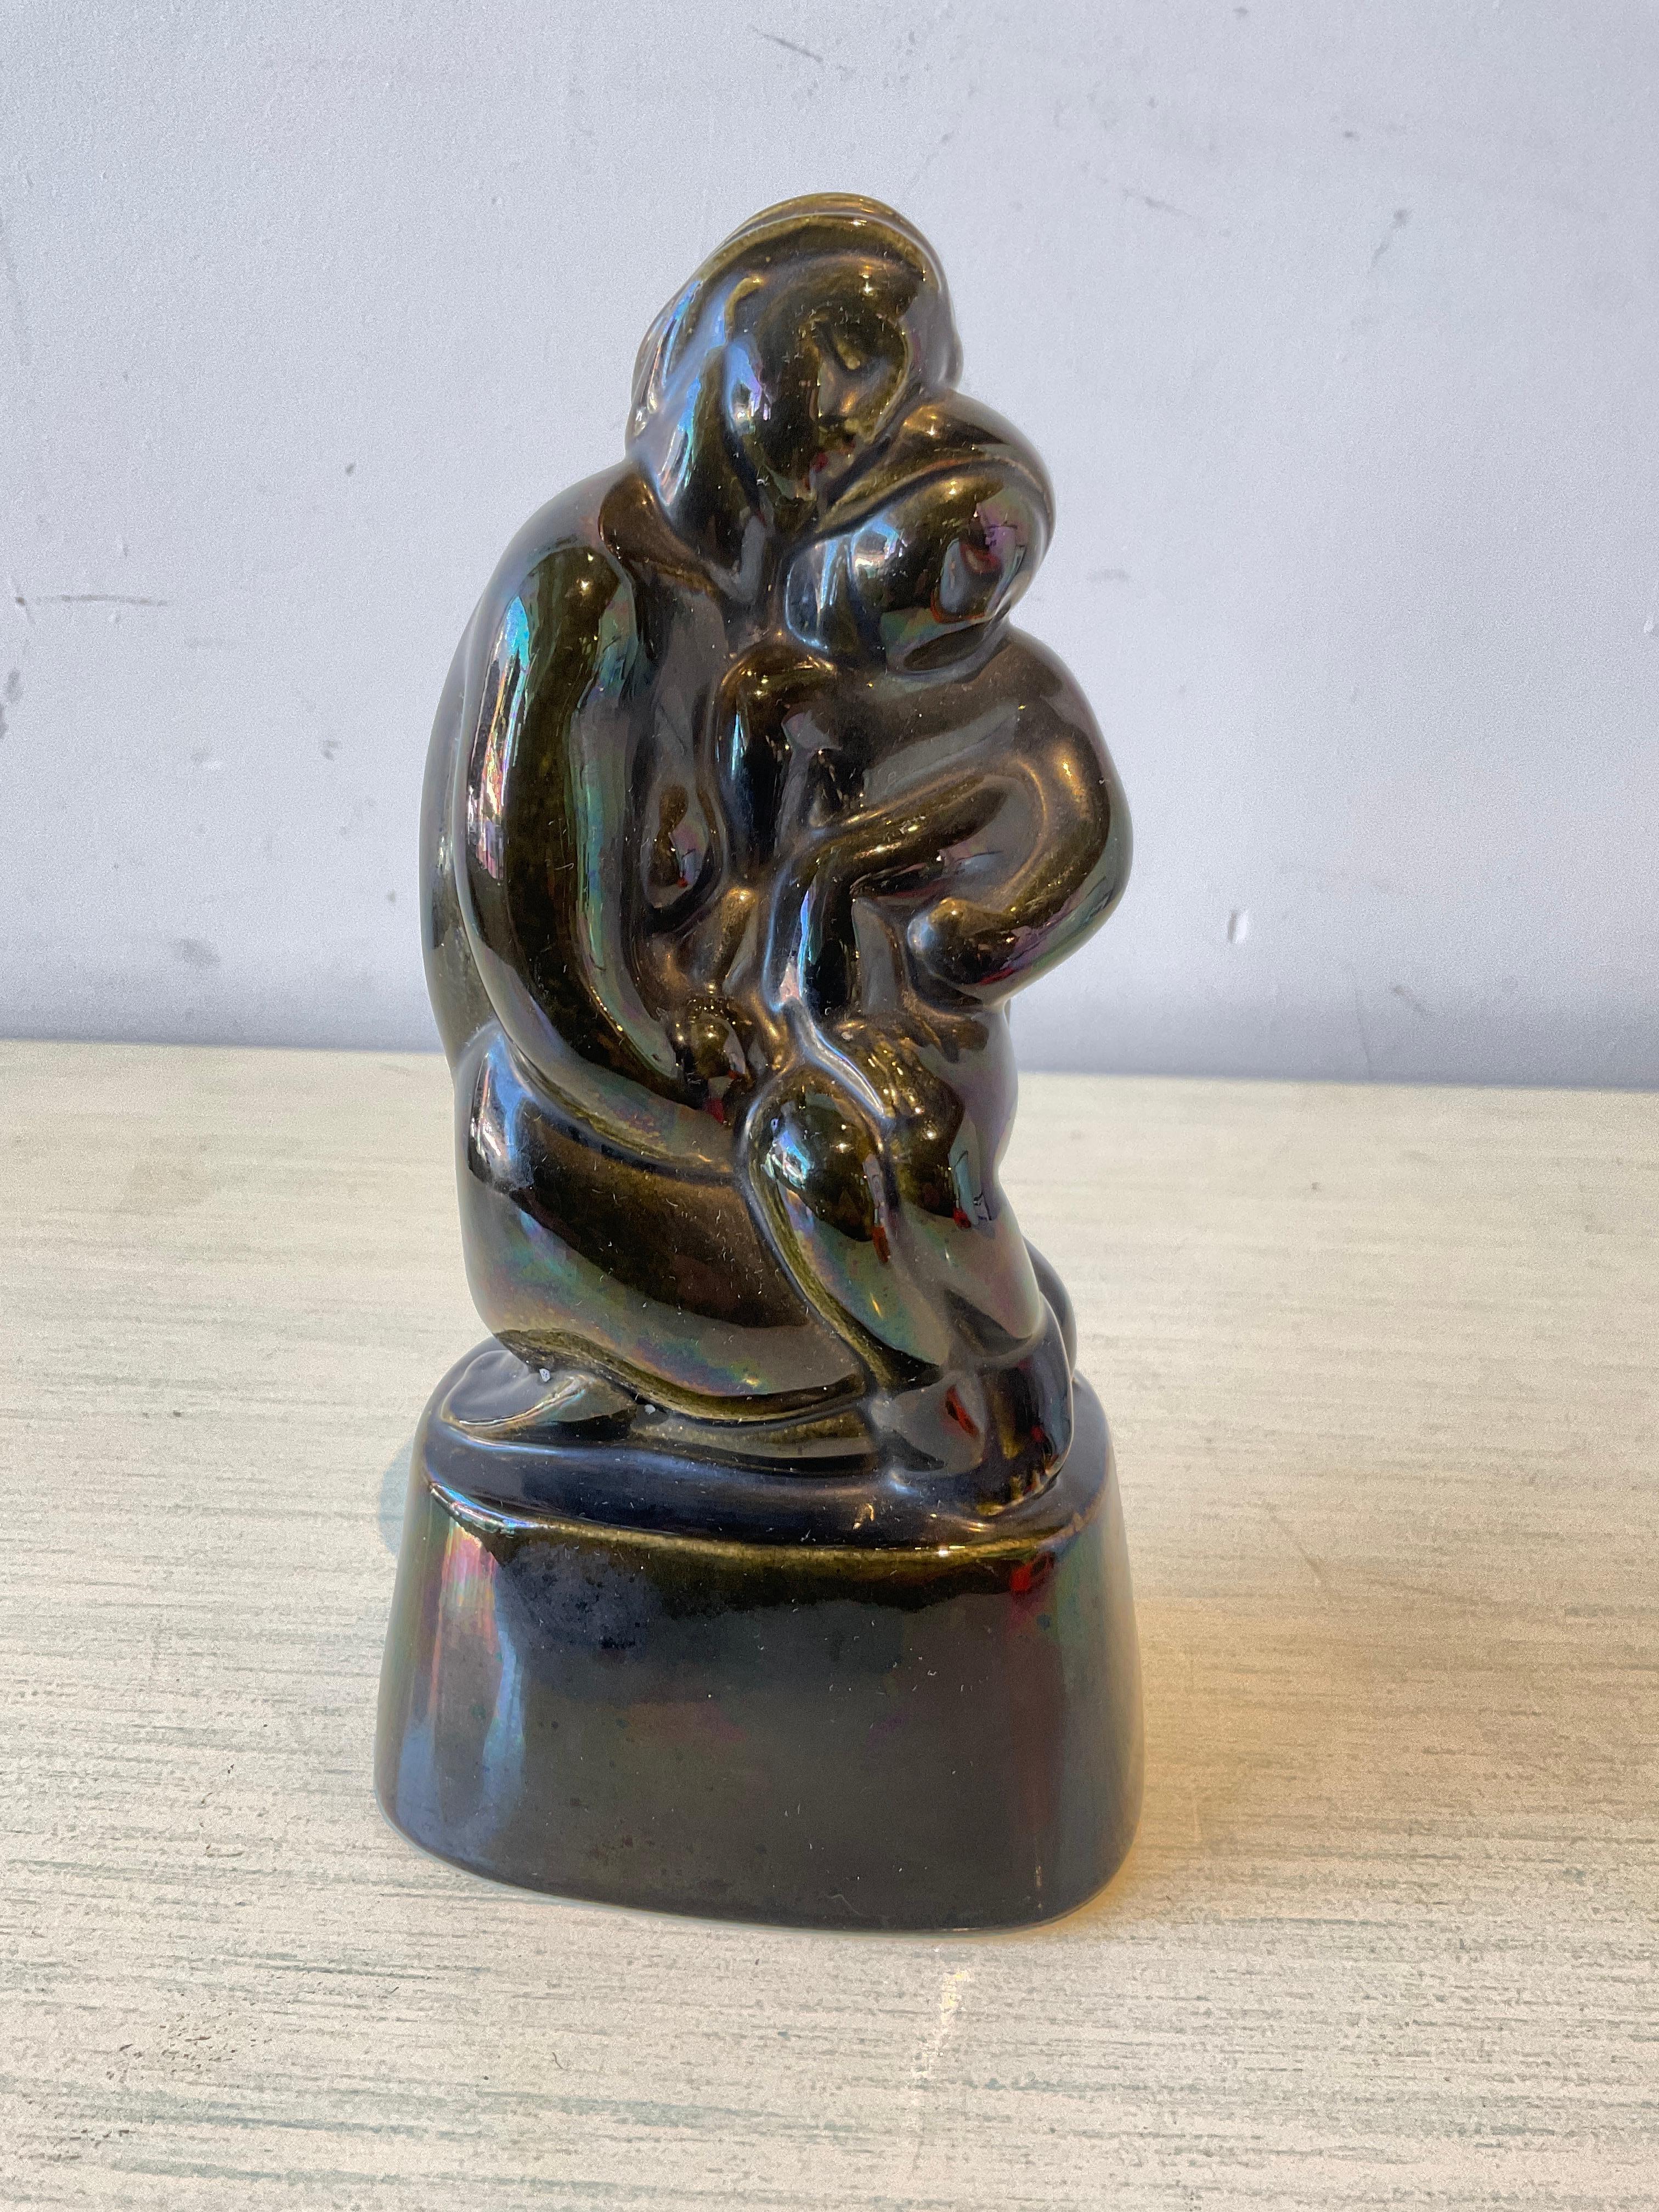 1929 Arko-Skulptur von N. Berger mit dem Titel Mutterschaft. Keramikplättchen verschwunden, wie in Abbildung 8 dargestellt.
ARKO 